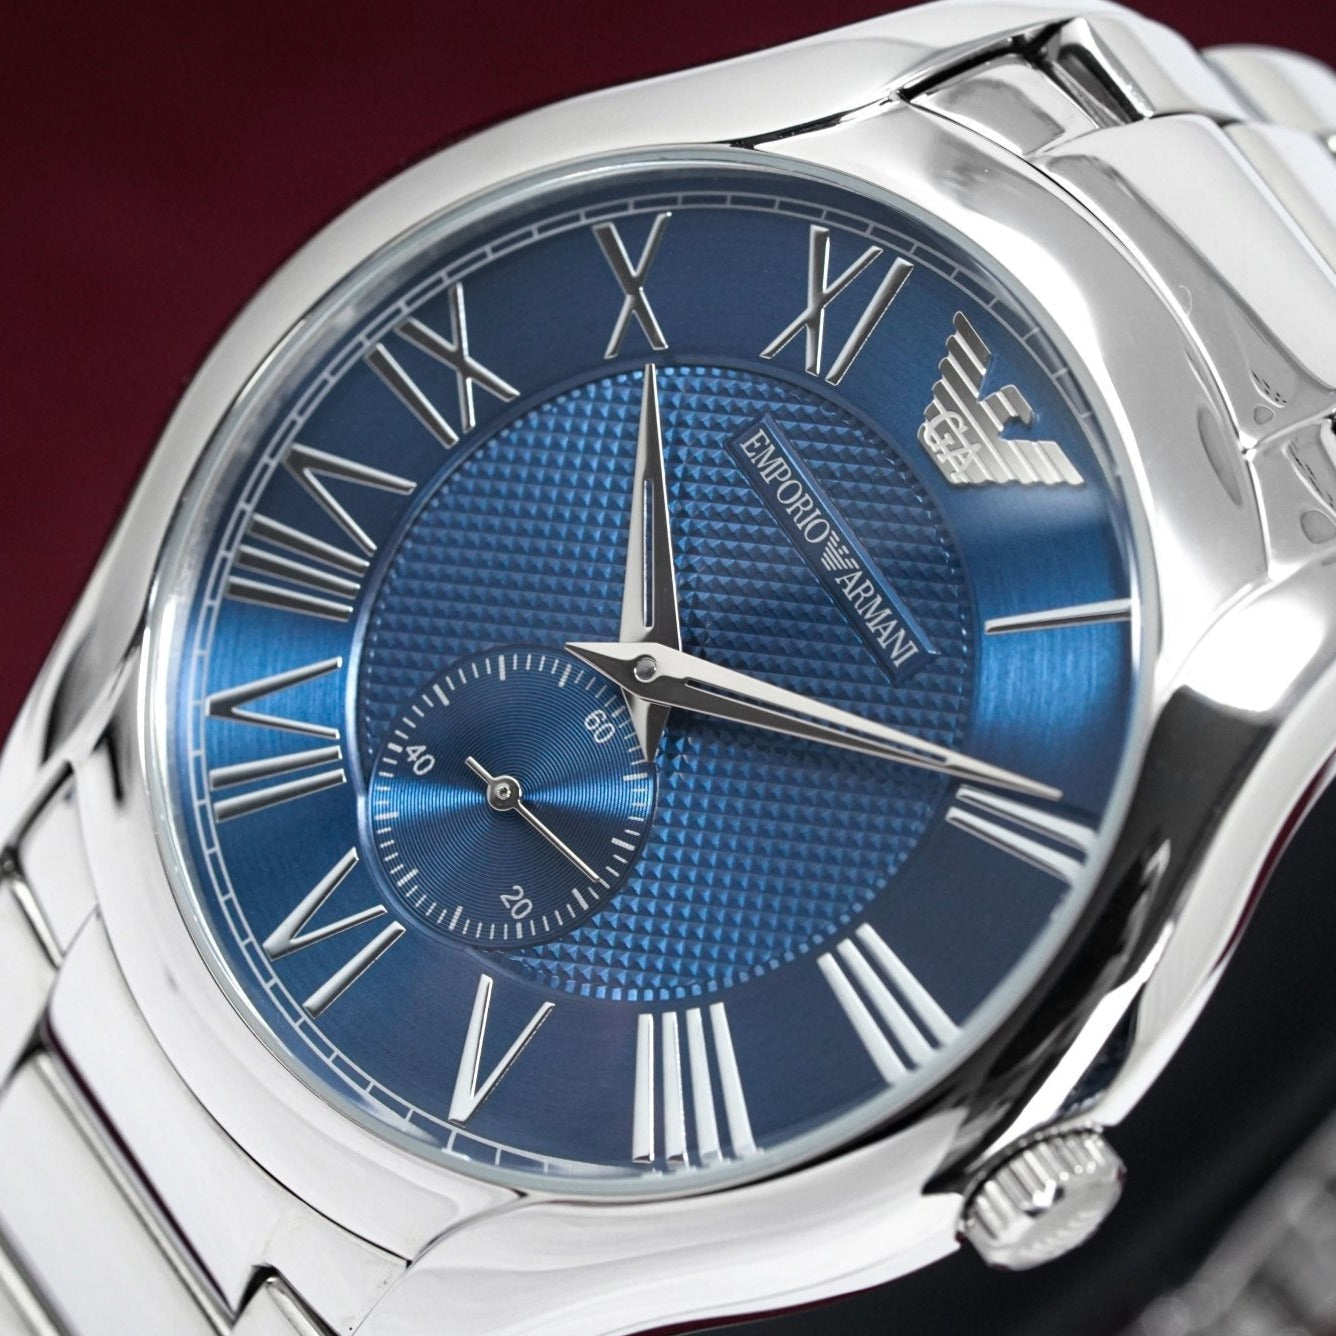 Emporio Armani Men's Valente Watch Blue AR11085 